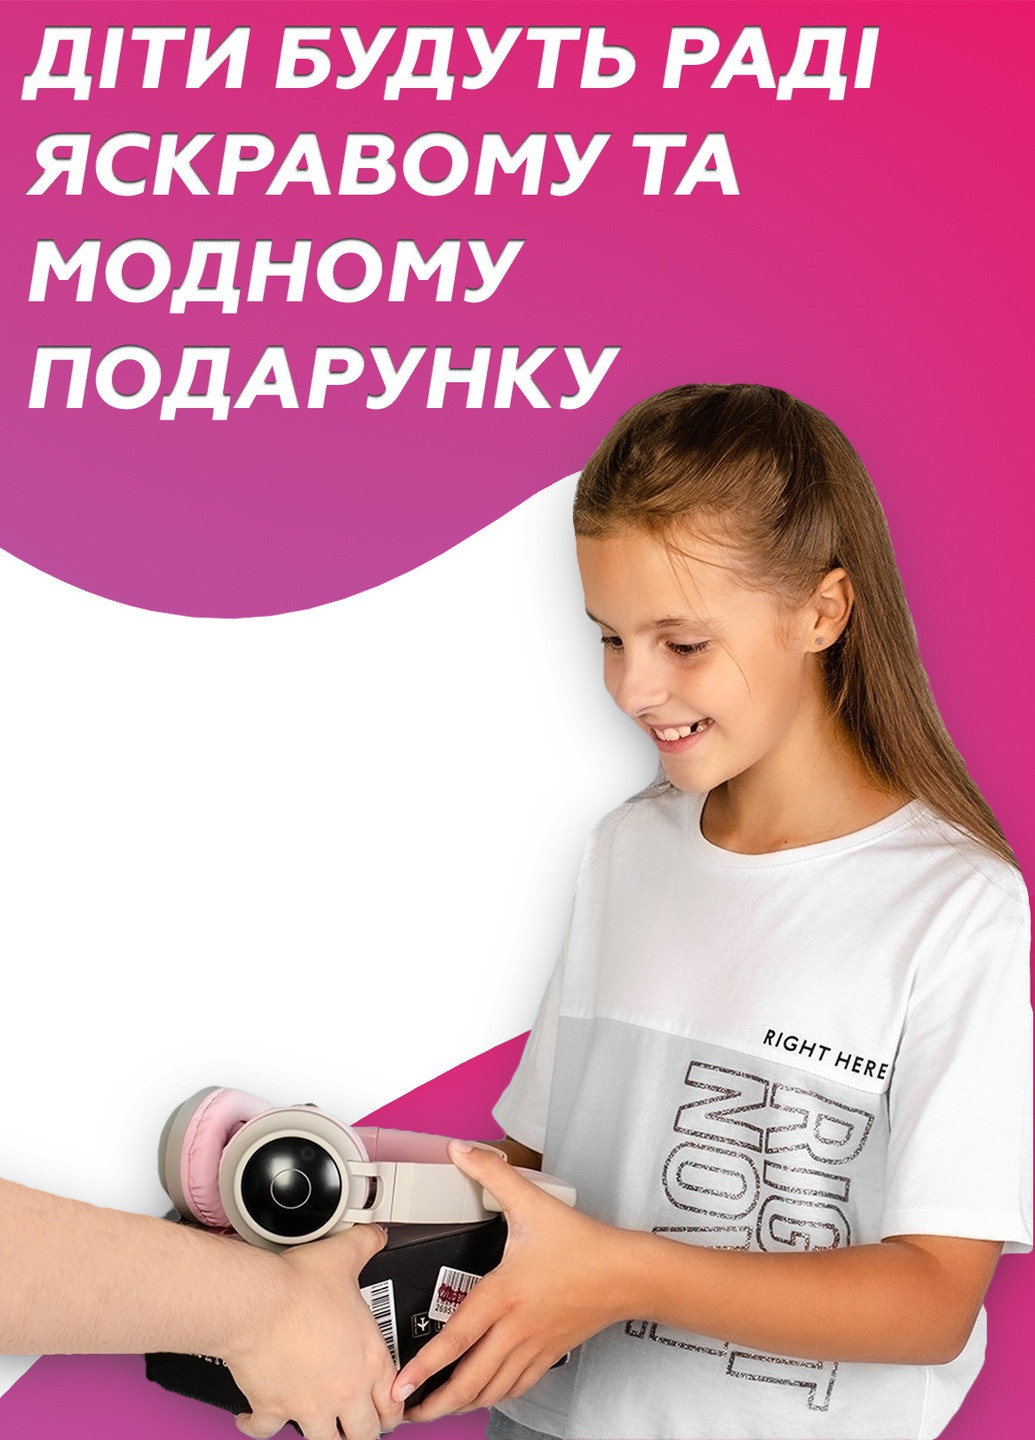 Светящиеся детские беспроводные наушники с ушками/с ушами DobraMAMA bt028c (252262997)